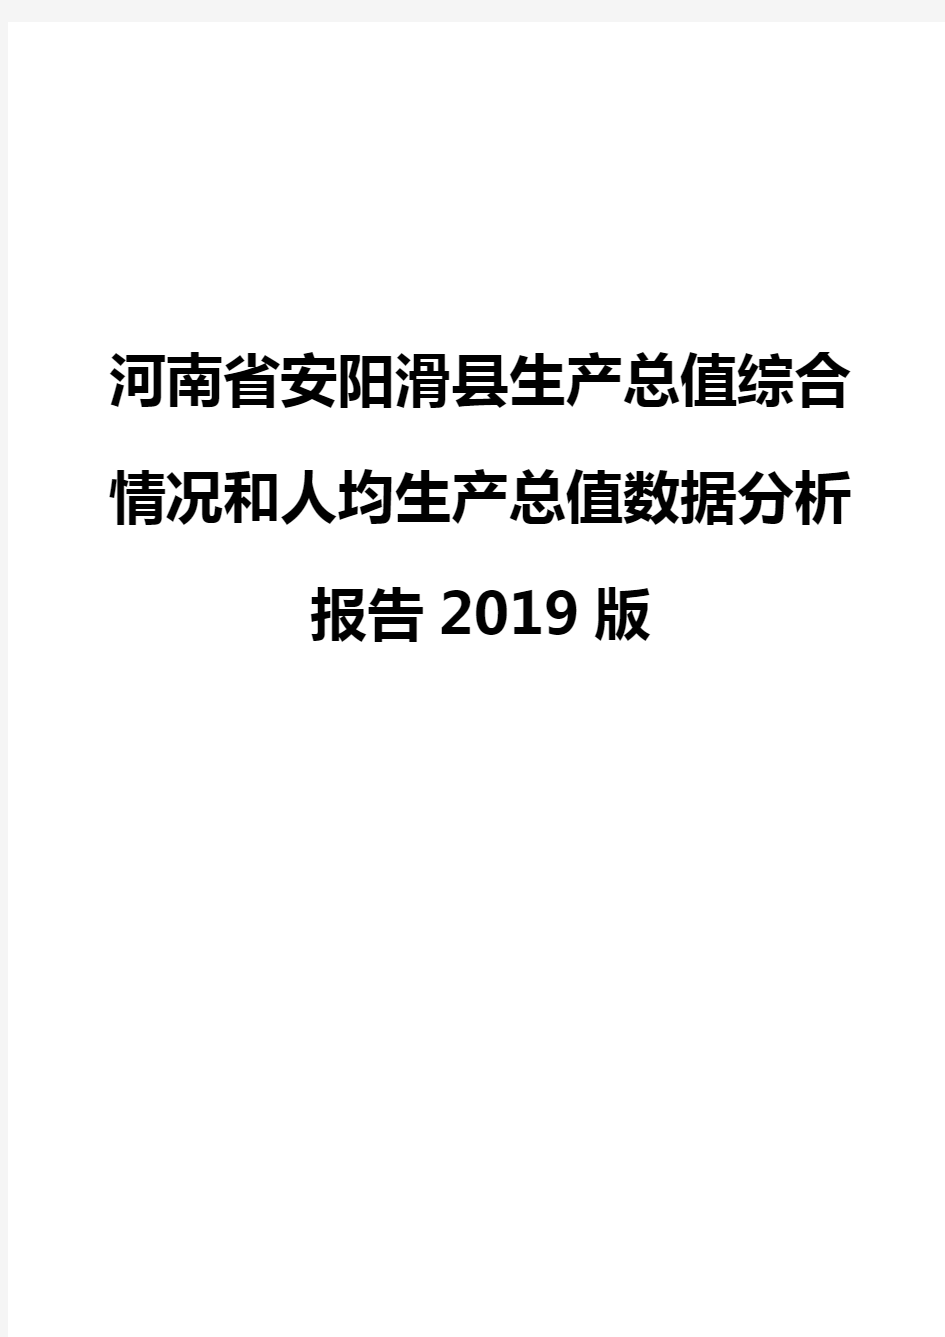 河南省安阳滑县生产总值综合情况和人均生产总值数据分析报告2019版